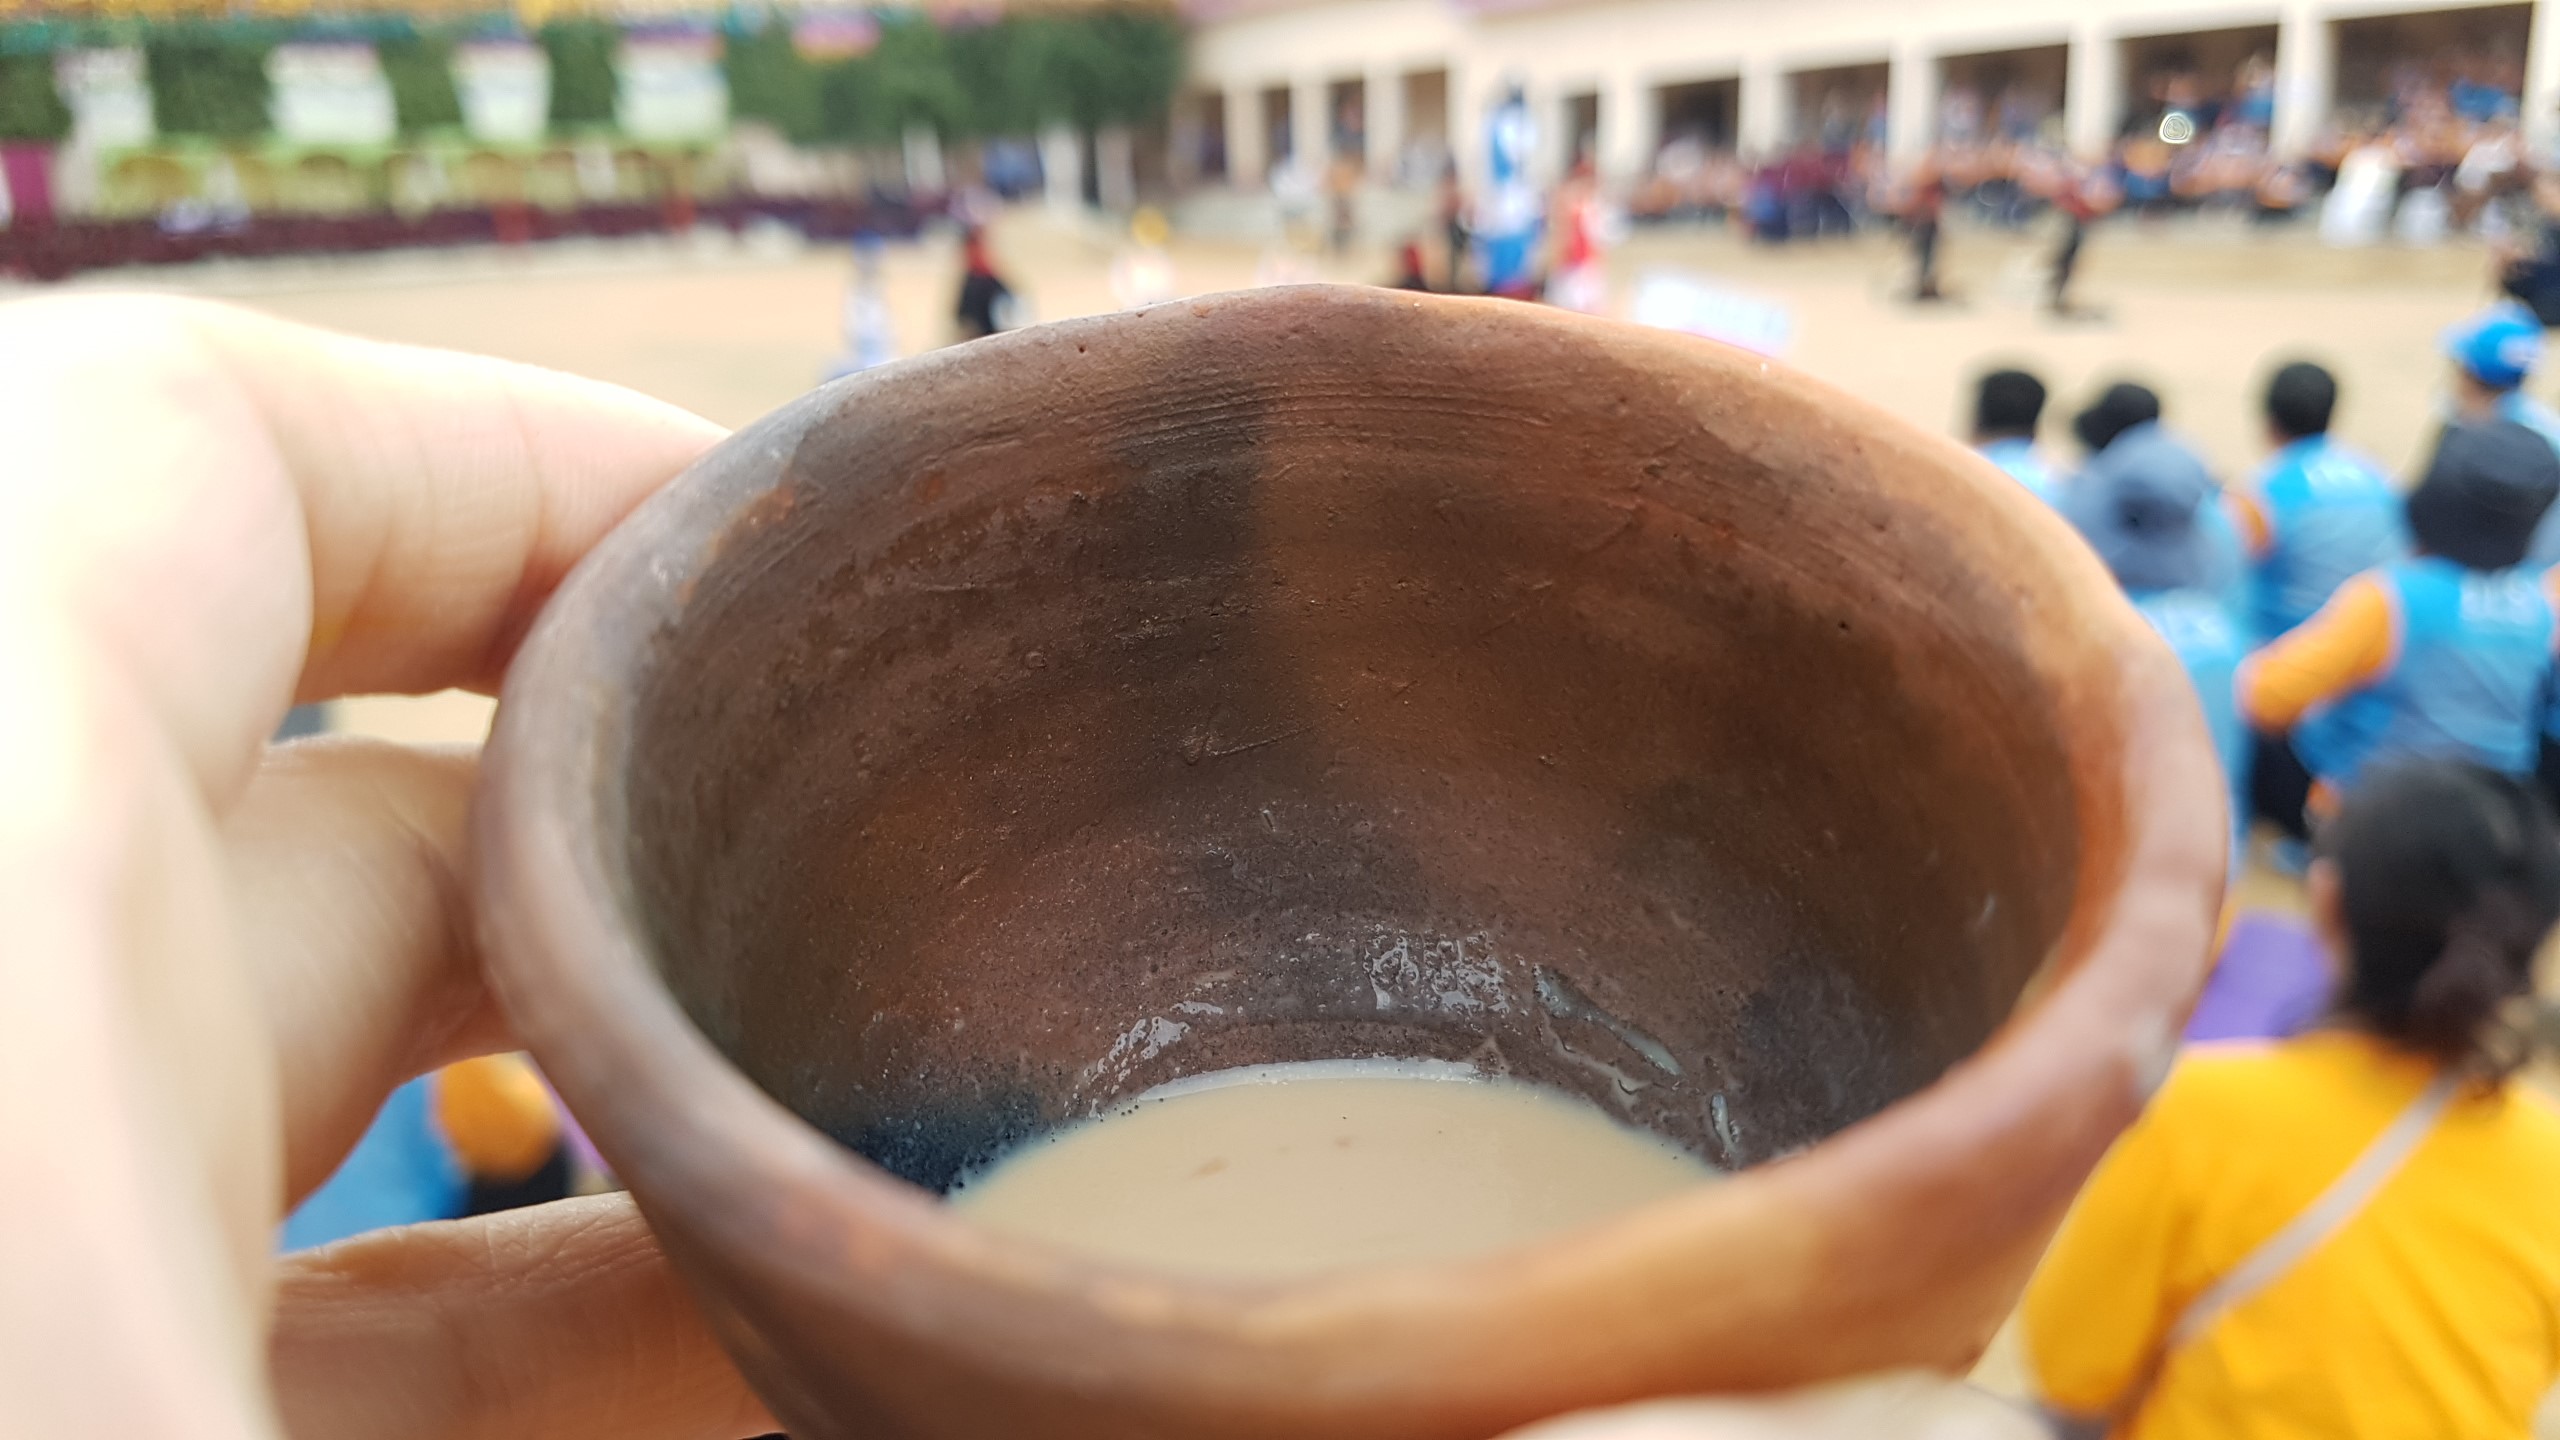 짜이 한 잔과 함께한 수자타 아카데미에서의 오후